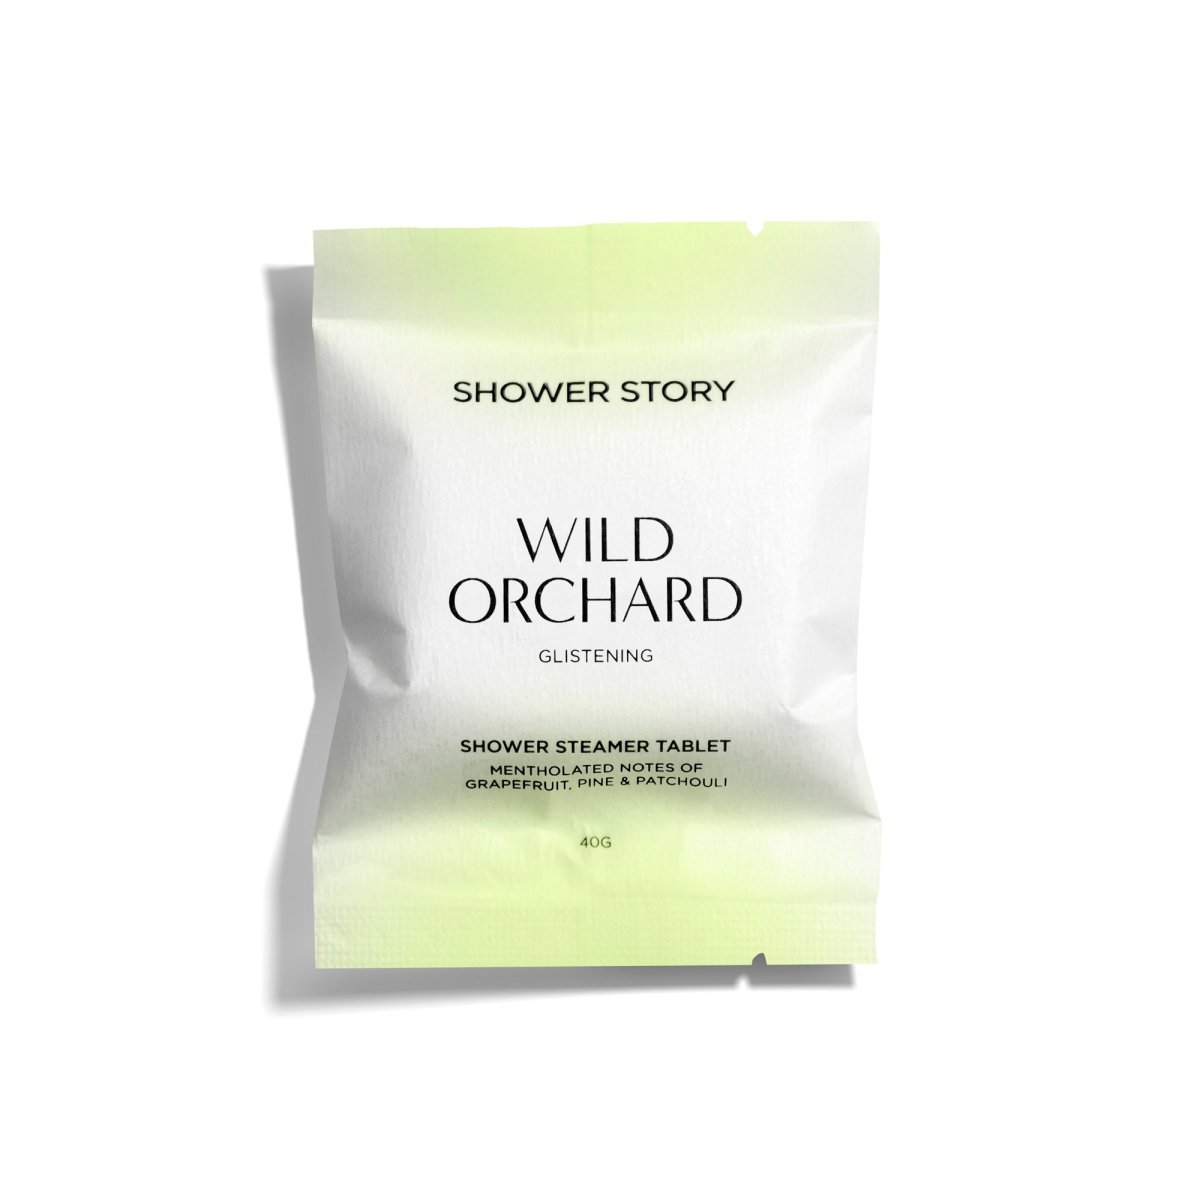 SHOWER STORY_[NEW] WILD ORCHARD – Glistening | Mentholated Shower Steamer Set (10 Tablets)_Shower Steamer Daily Set_SSWODX10